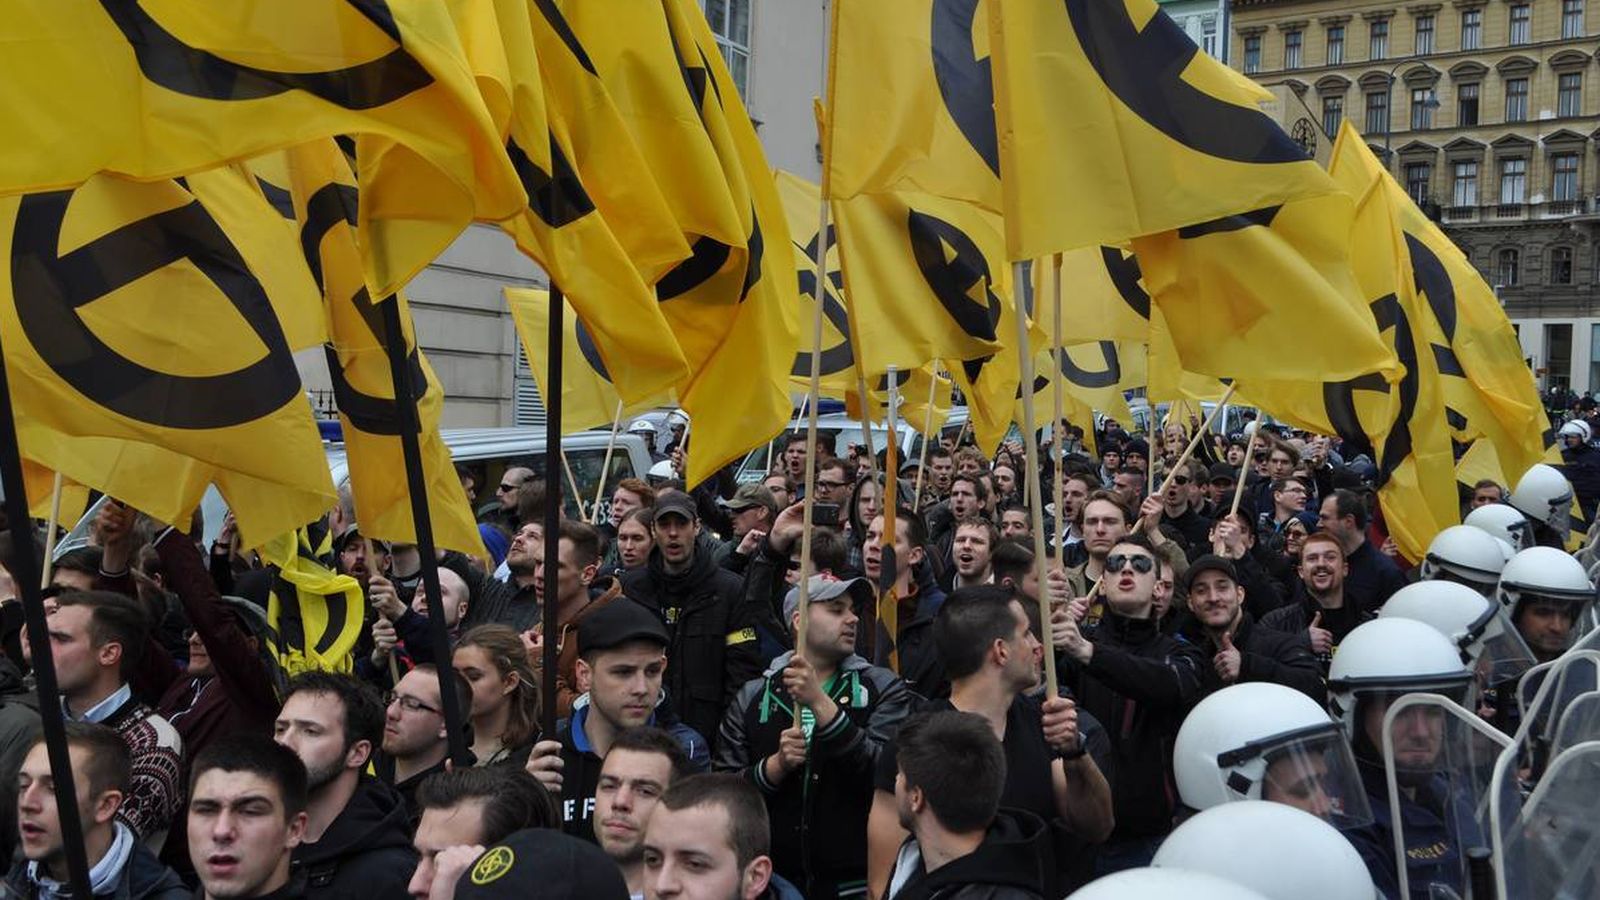 Foto: Manifestación de Movimiento Identitario por Europa en Viena, mayo de 2014 (Foto: Web de Identitäre Bewegung)